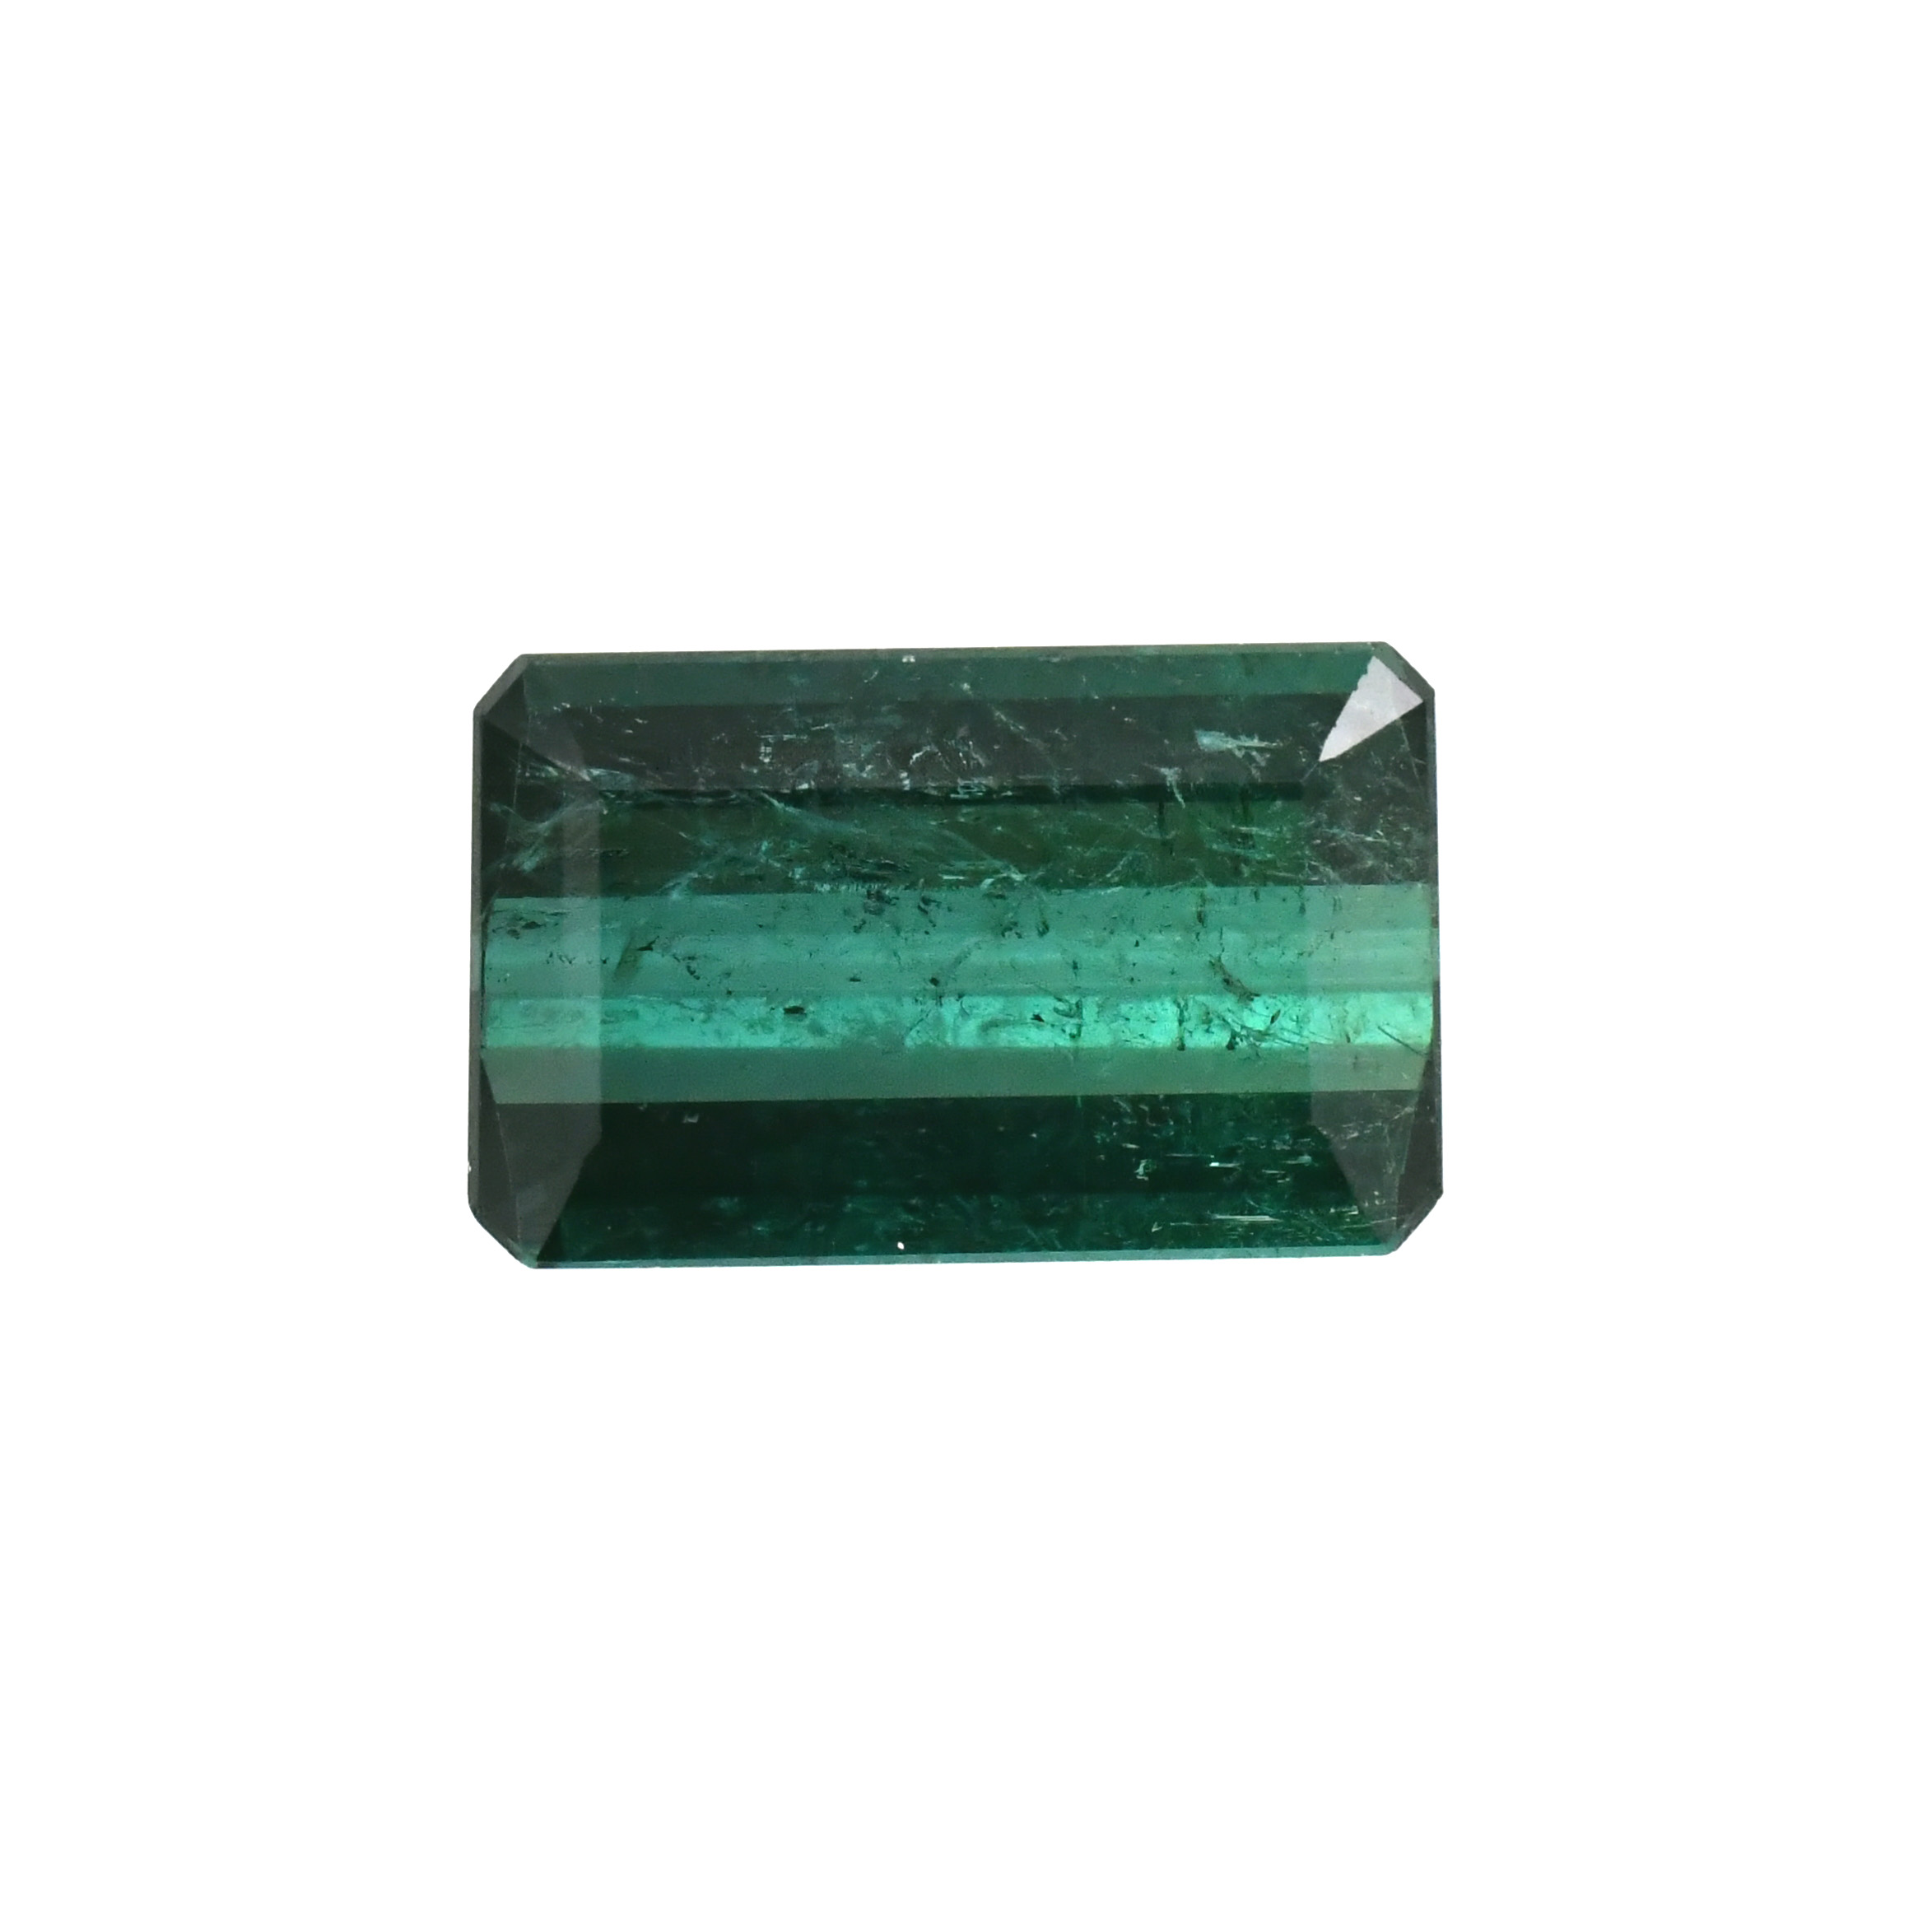 Indicolite Tourmaline Emerald Cut 17x11mm Single Piece 10.19 Carat